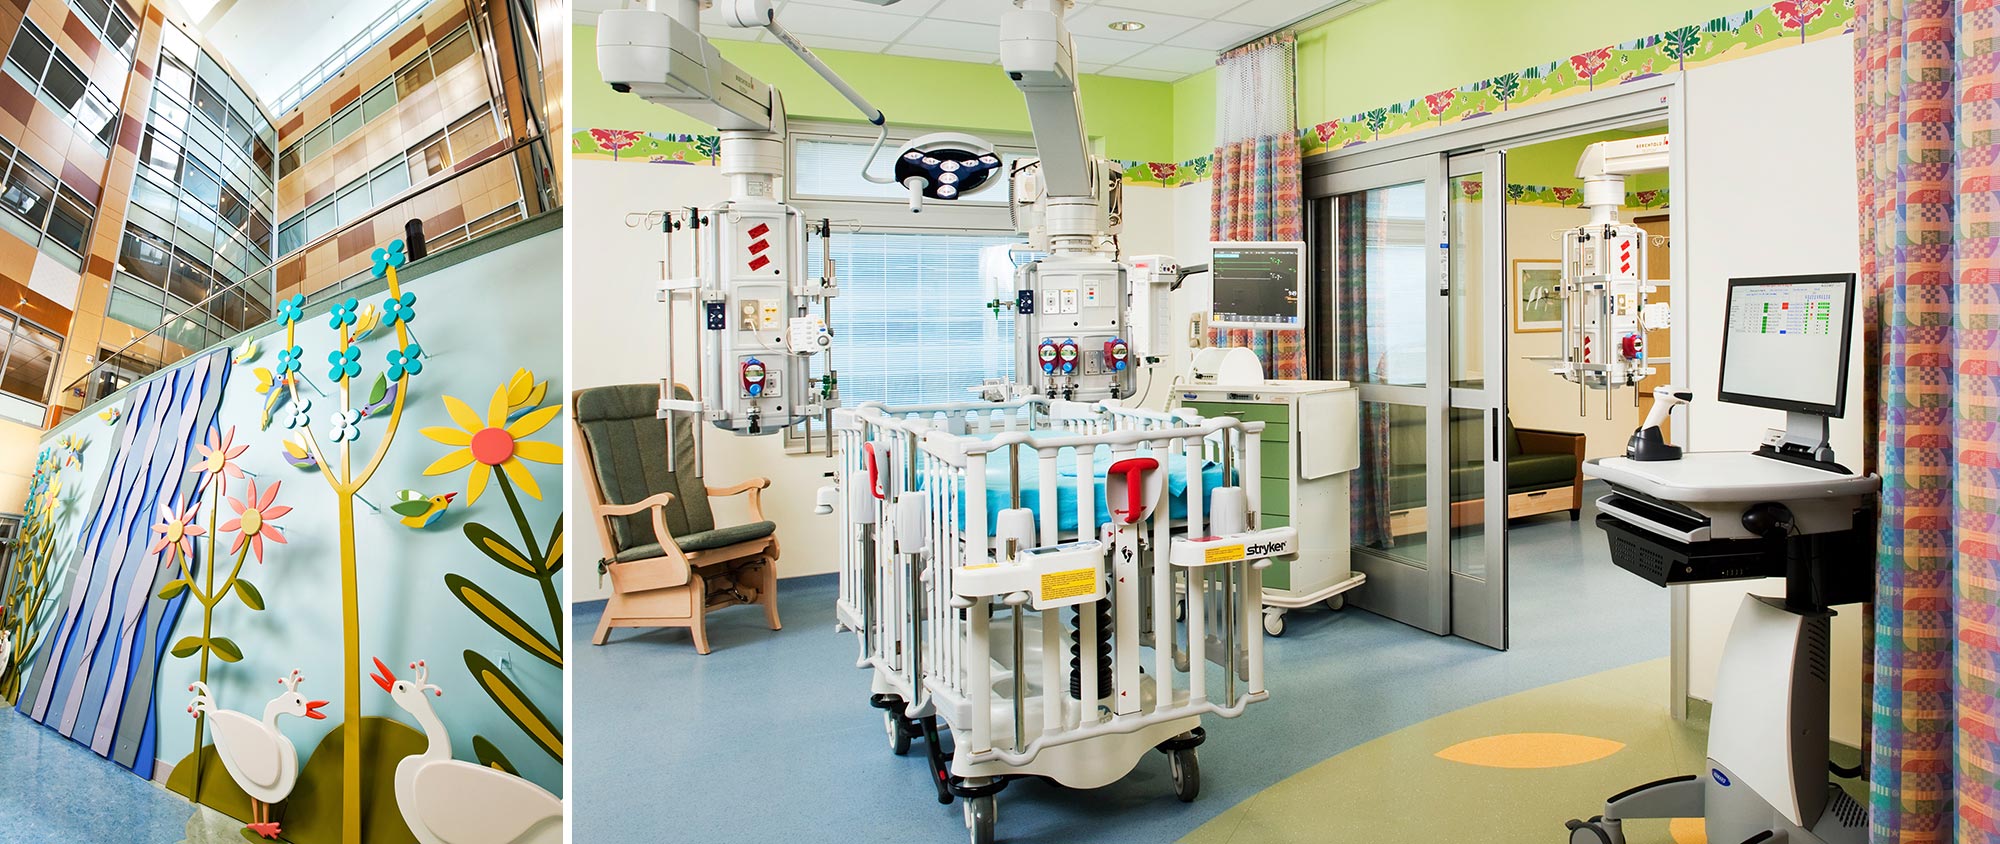 Monroe Carell Jr. Children’s Hospital at Vanderbilt, Bed Expansion